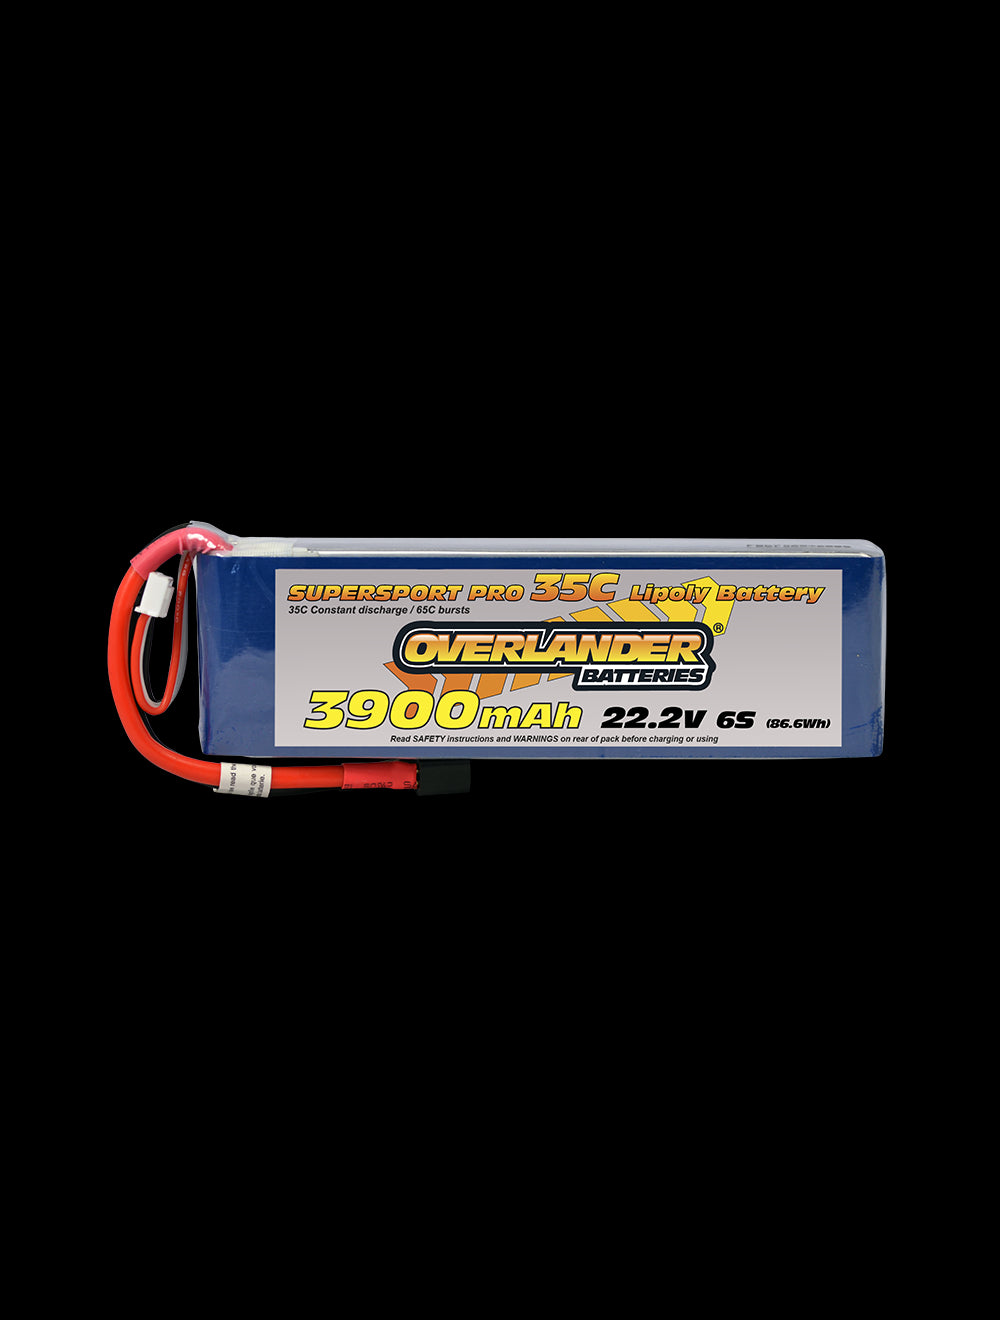 Overlander 3900mAh 22.2V 6S 35C Supersport Pro LiPo Battery - XT90 Connector 2473